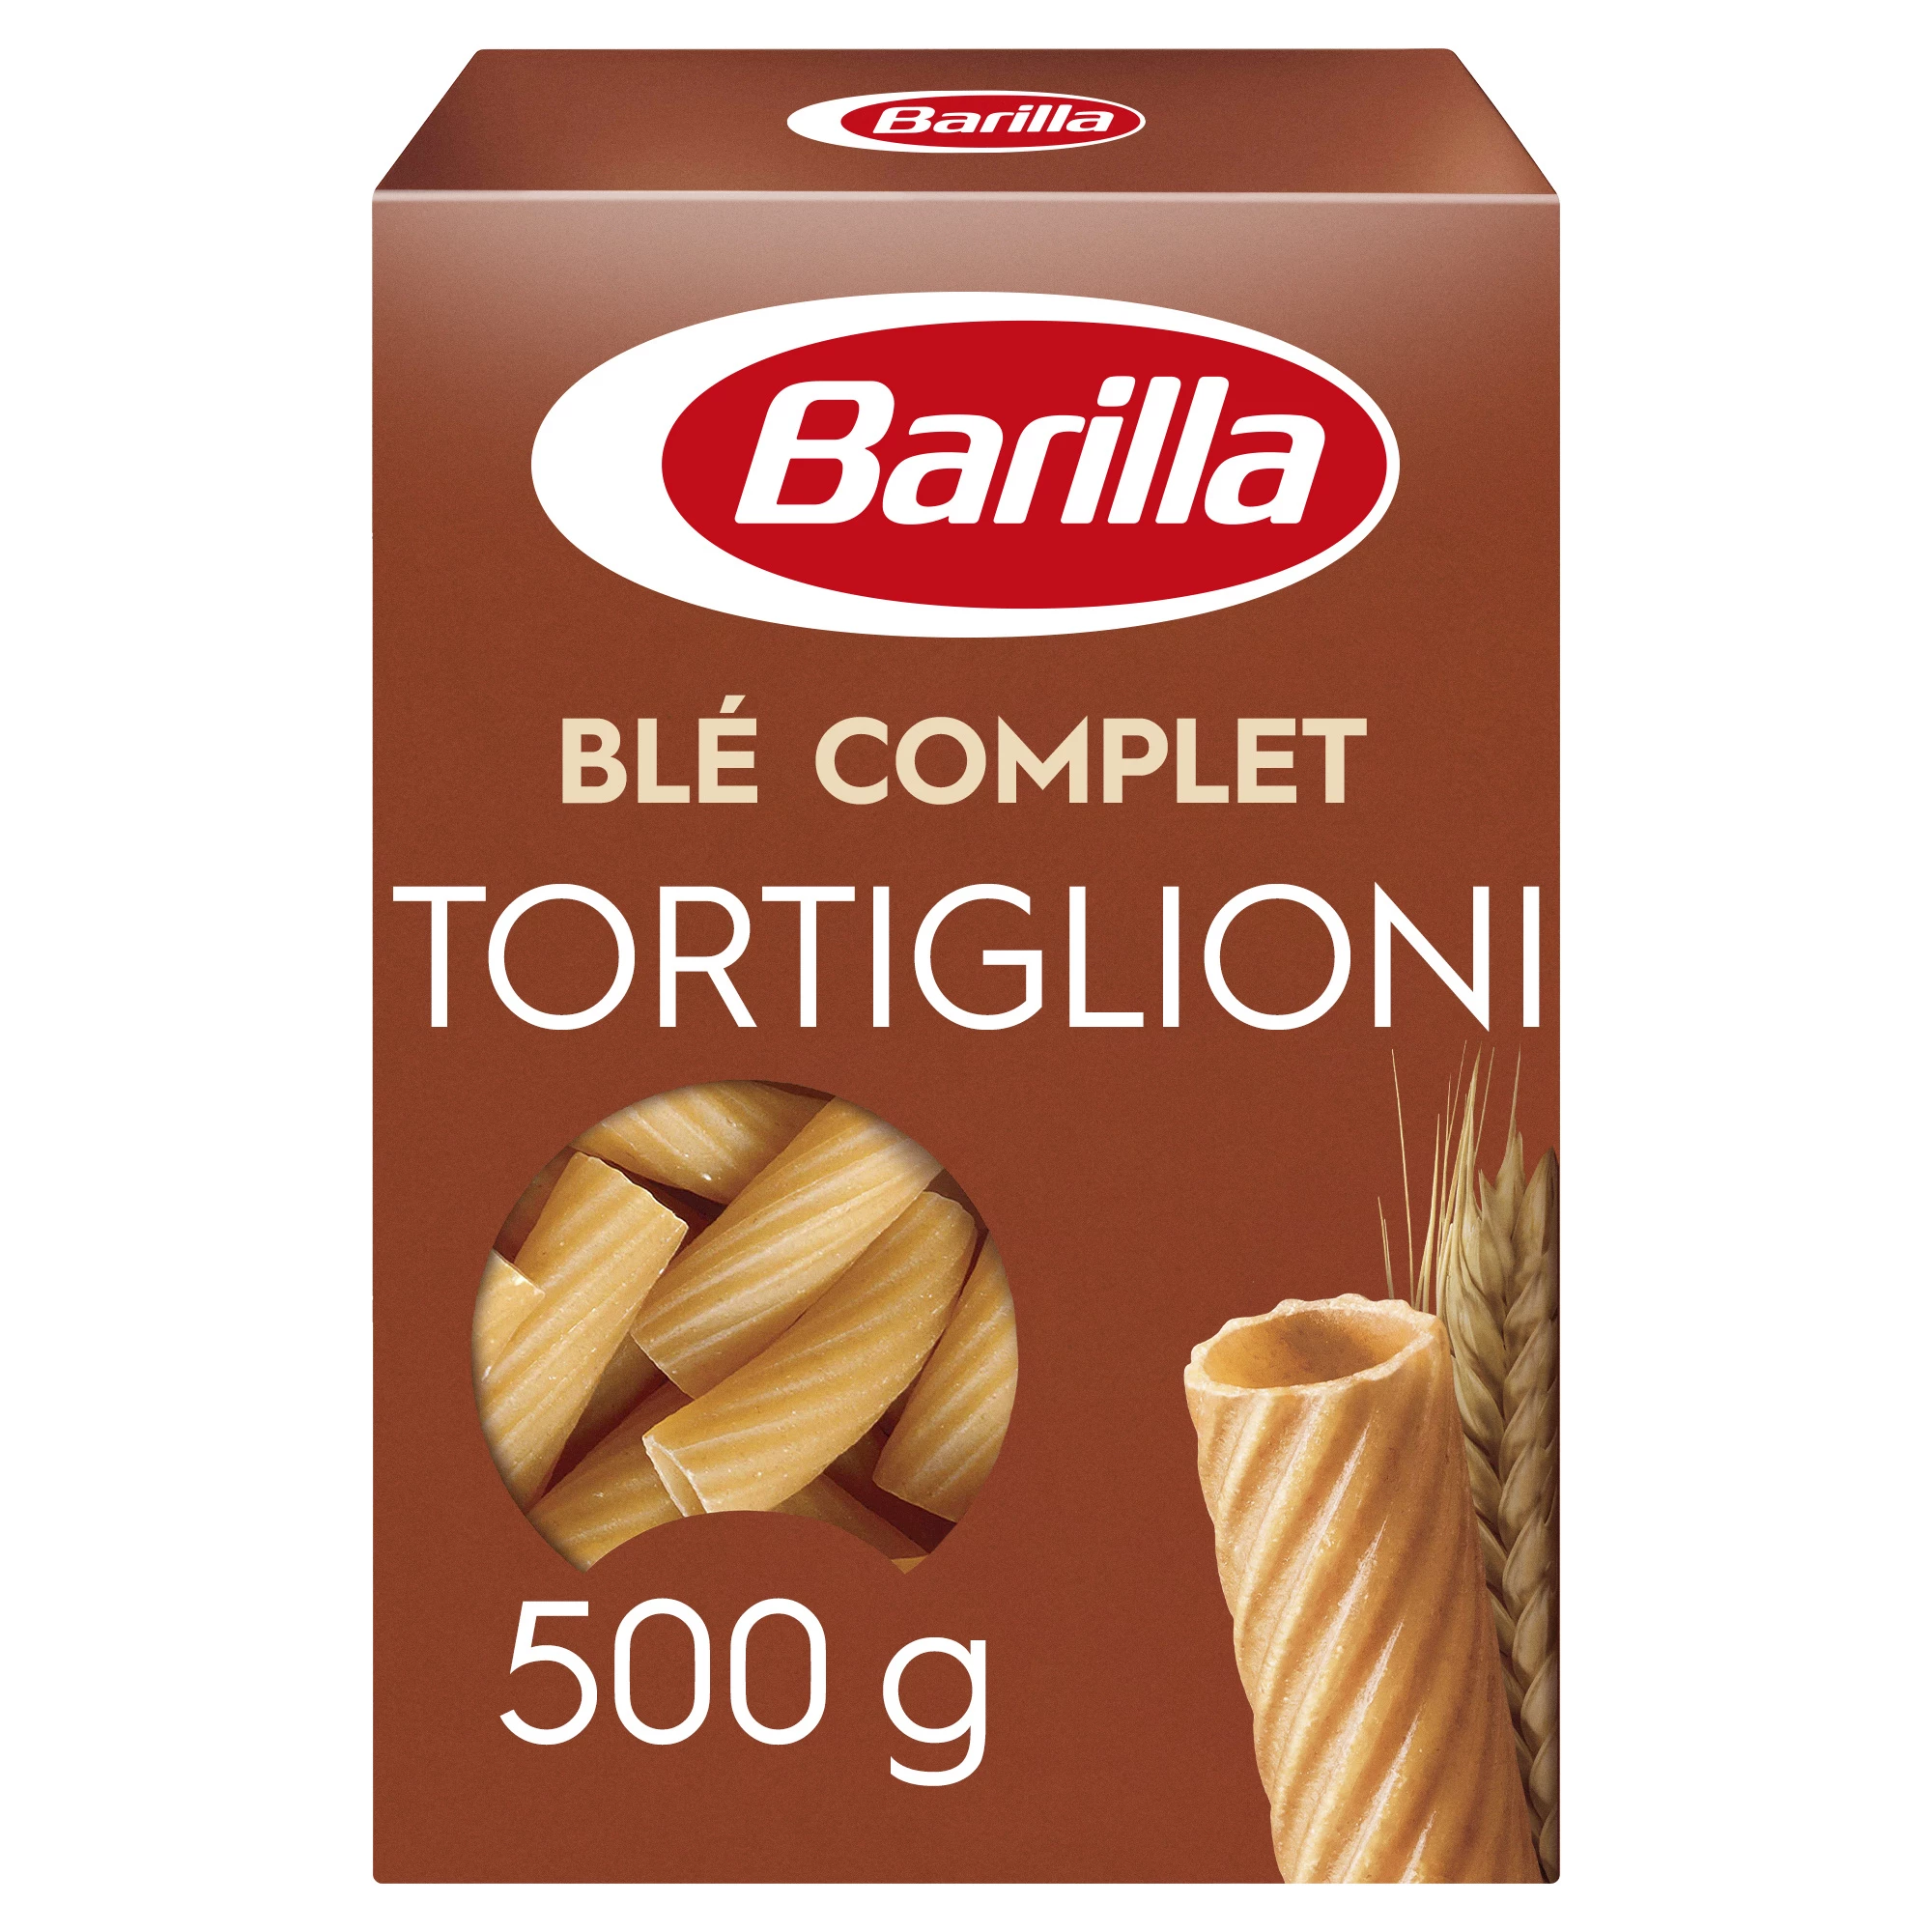 Tortiglioni Ble Complete 500g